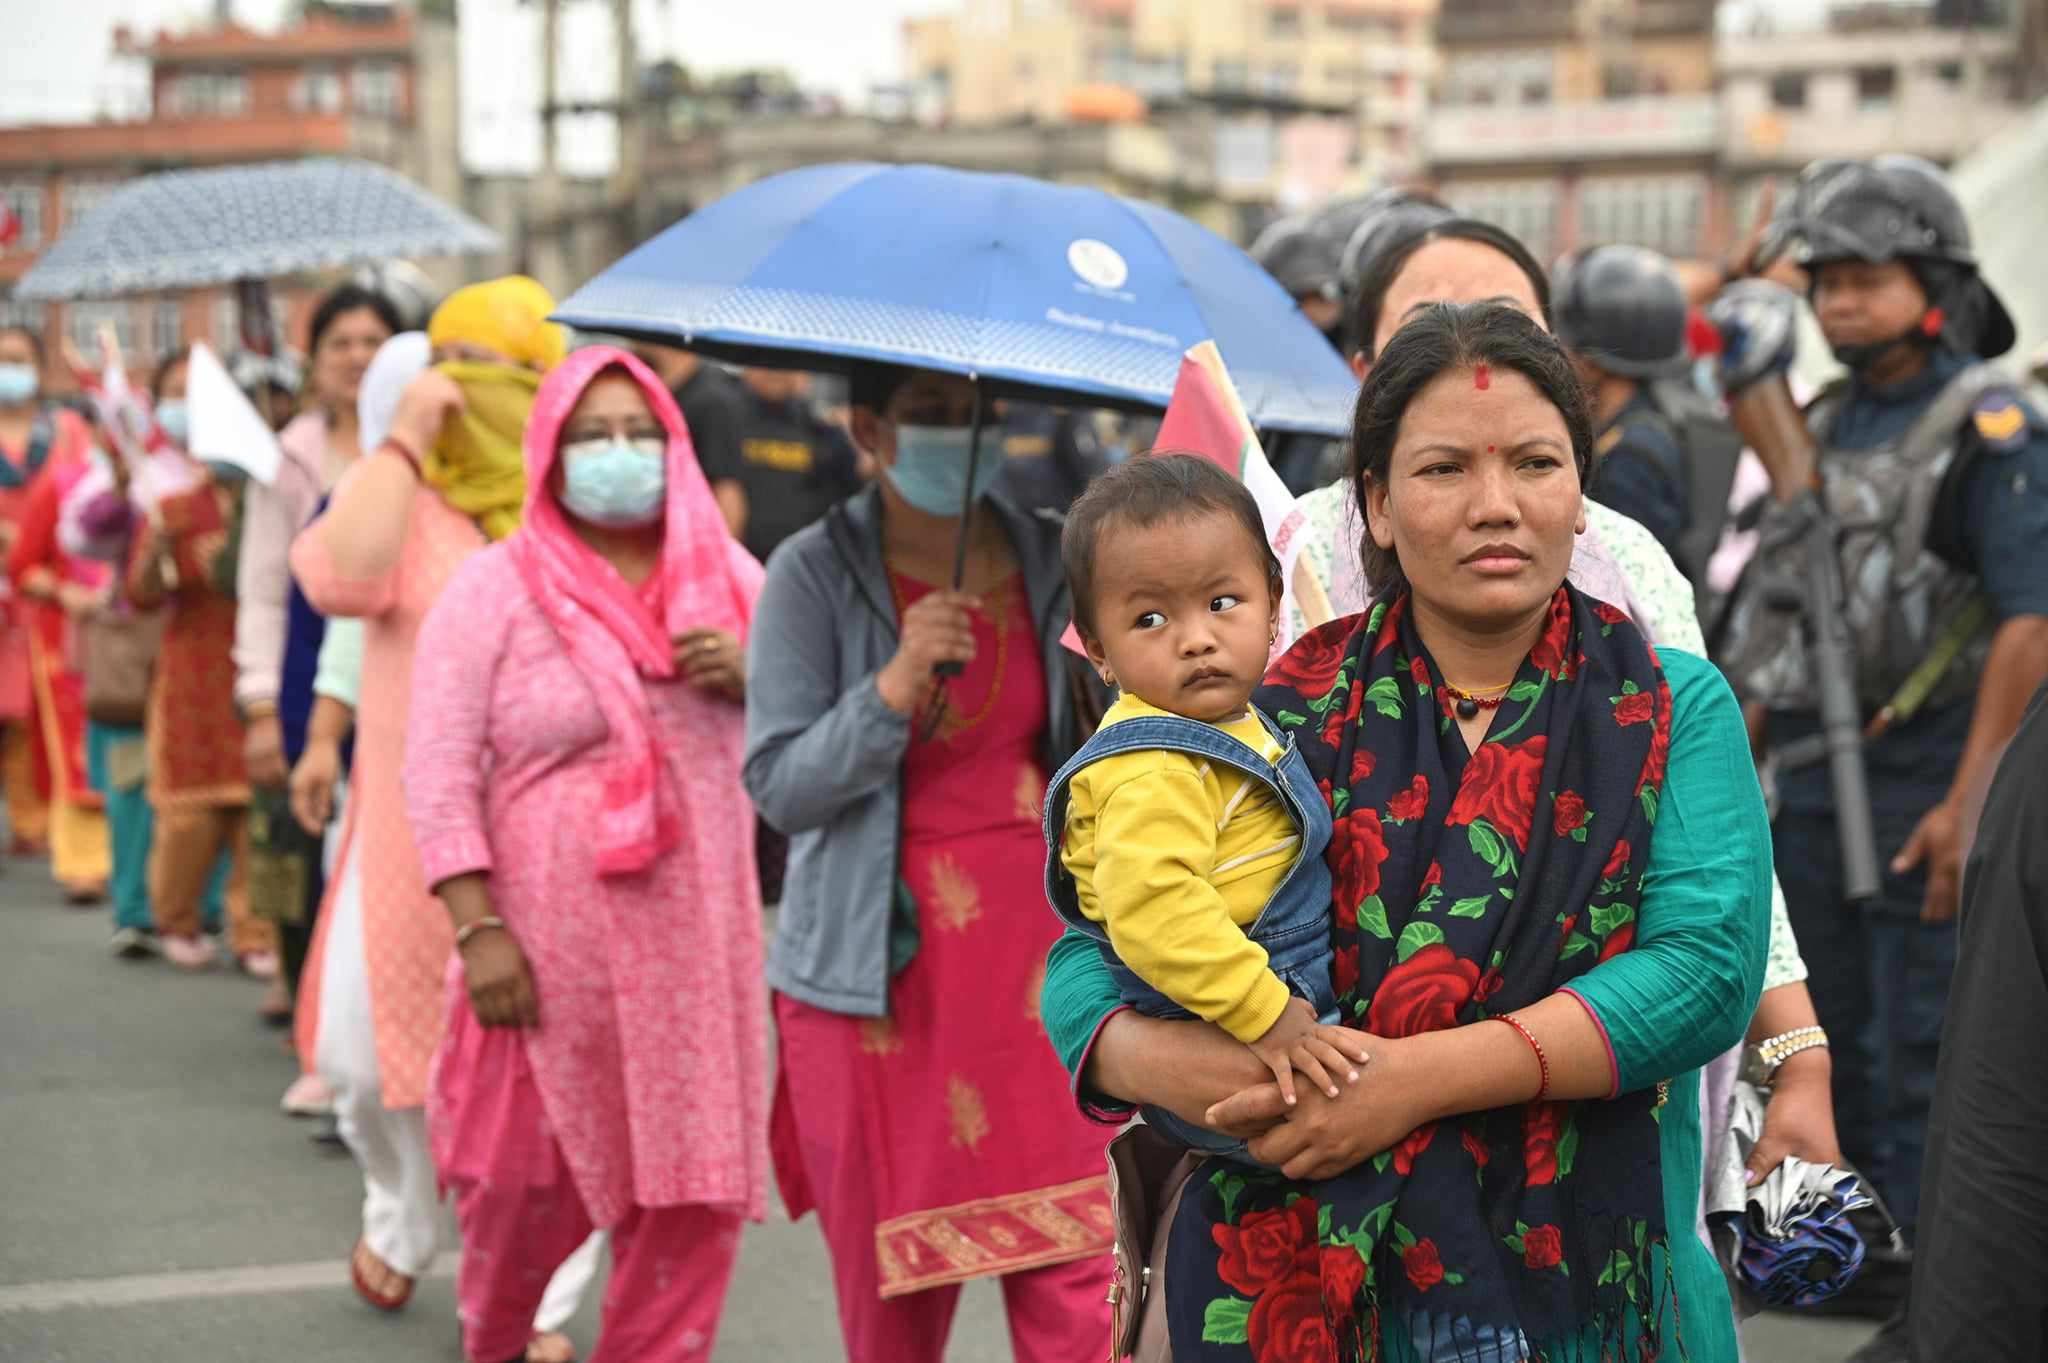 बचत फिर्ता माग्दै काठमाडाैंमा सहकारीपीडितकाे प्रदर्शन, दूधेबालक बाेकेर महिलाहरू सडकमा (तस्वीरहरू)